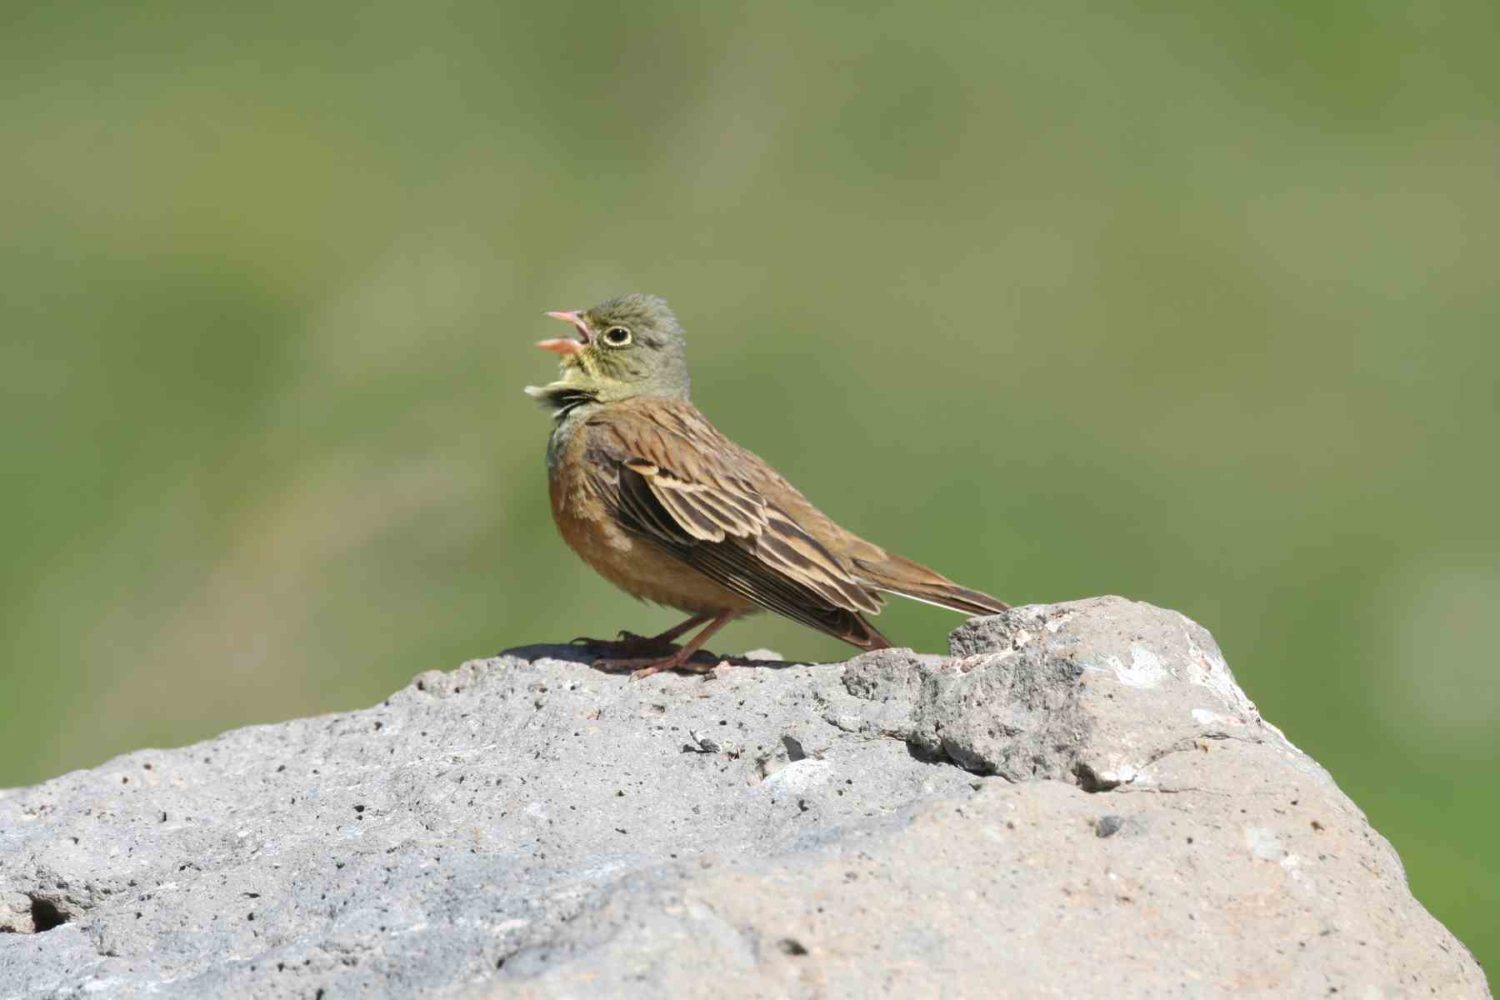 Nature-Wildlife- Armenia bird watching